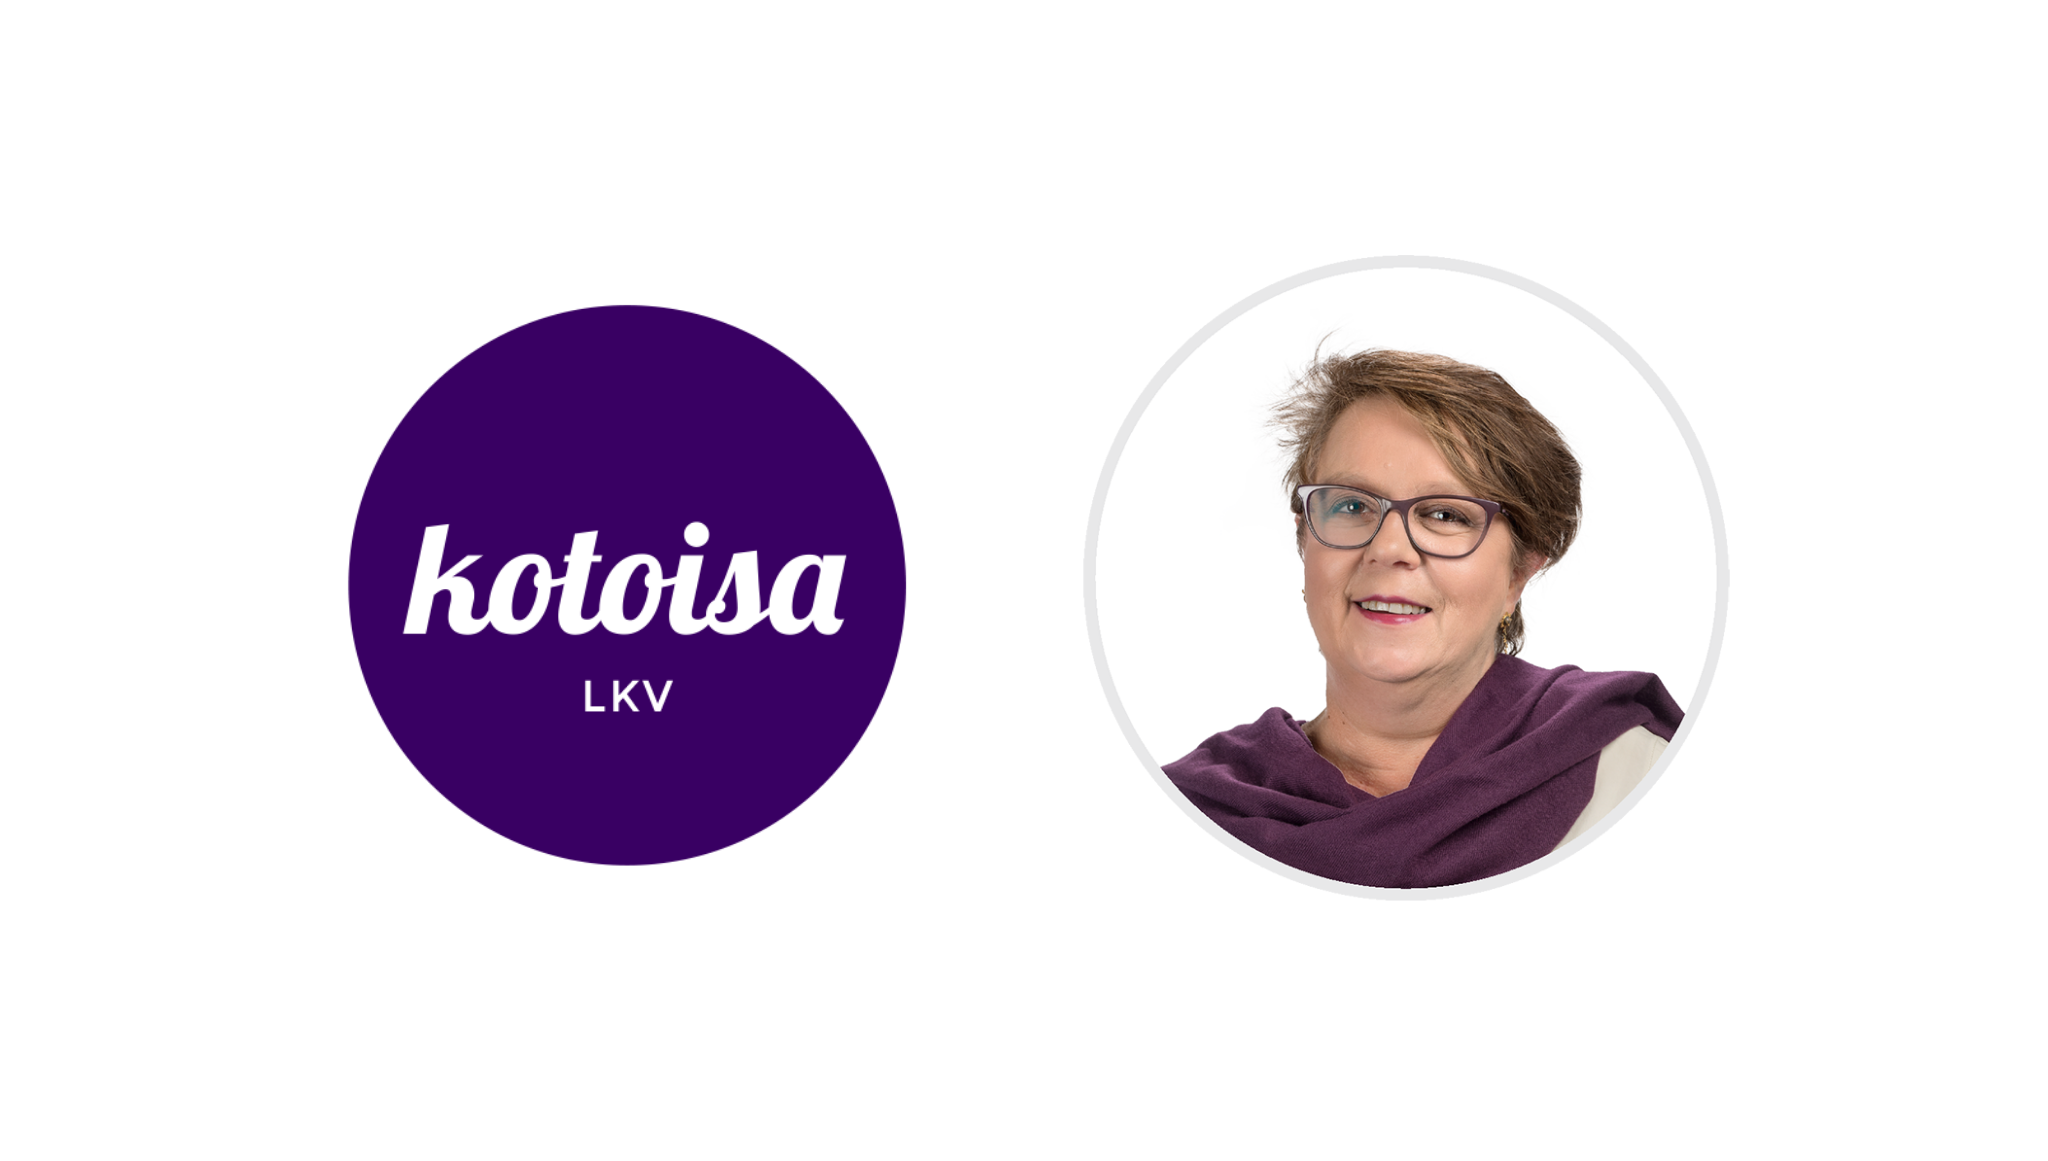 Vuoden Parhaat 2019: Kotoisa LKV